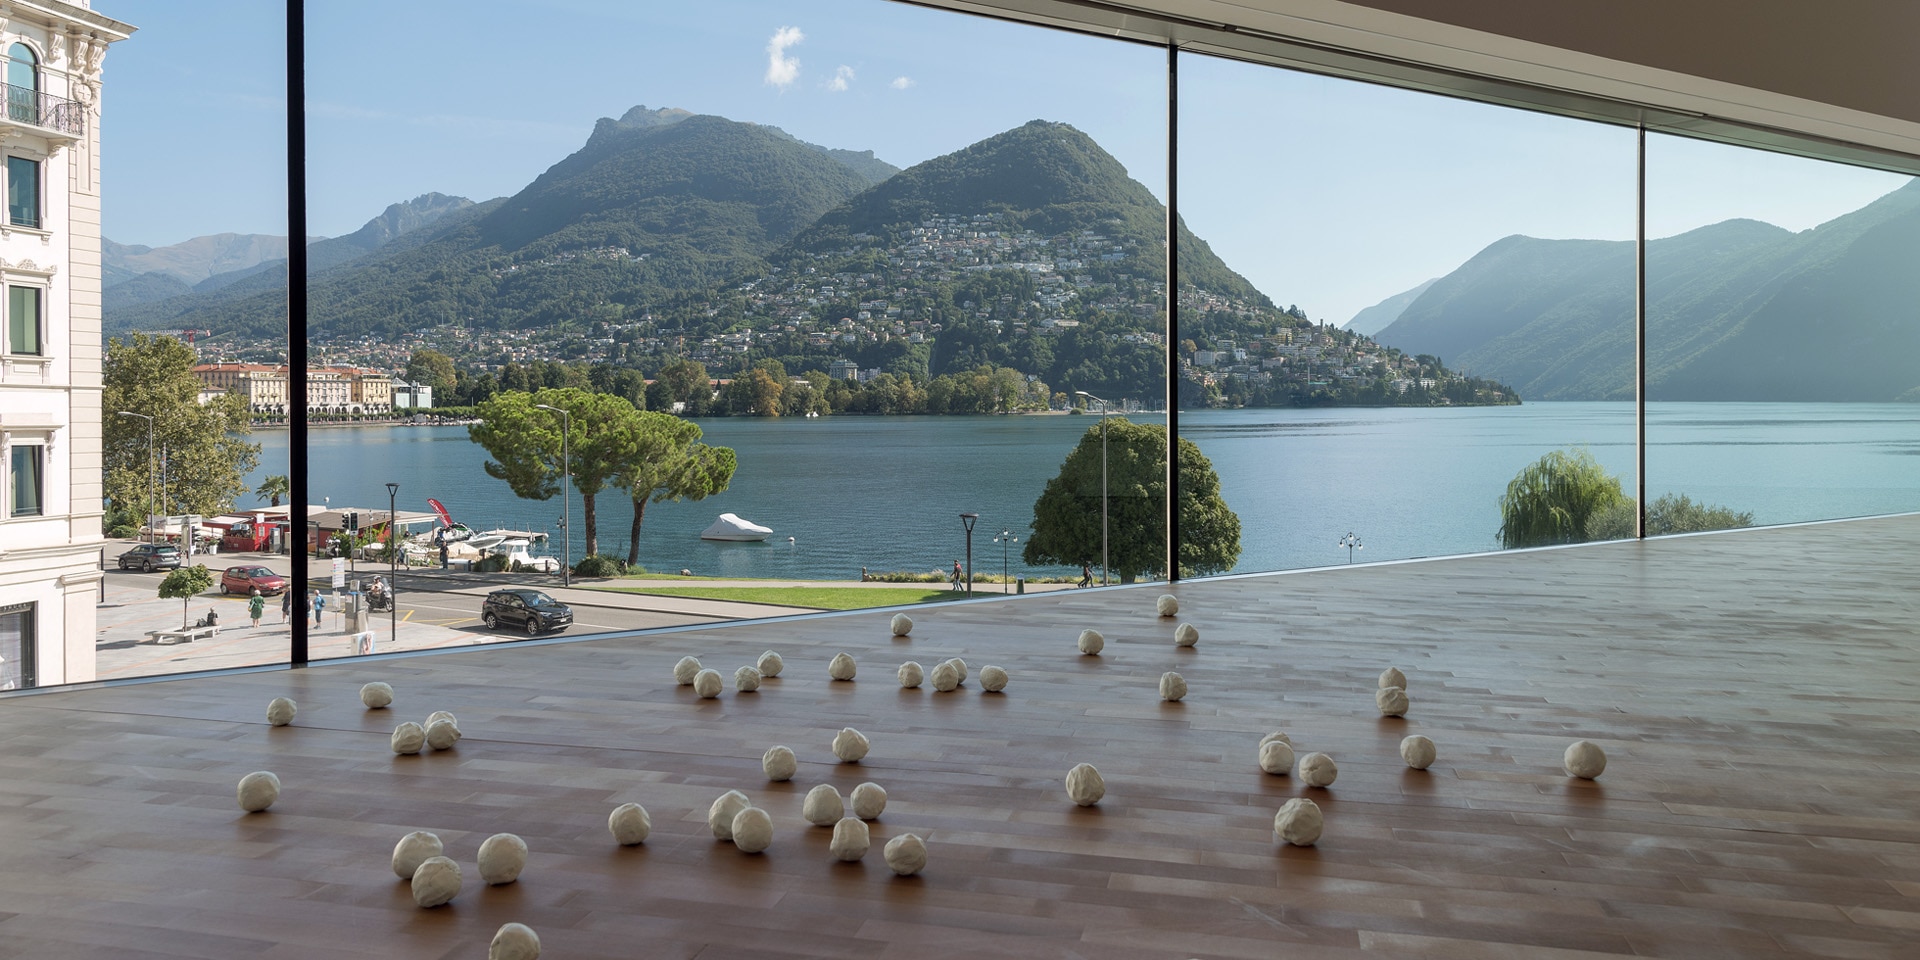  Ein Zimmer im Kulturzentrum Lugano Arte e Cultura, mit Blick auf den See.